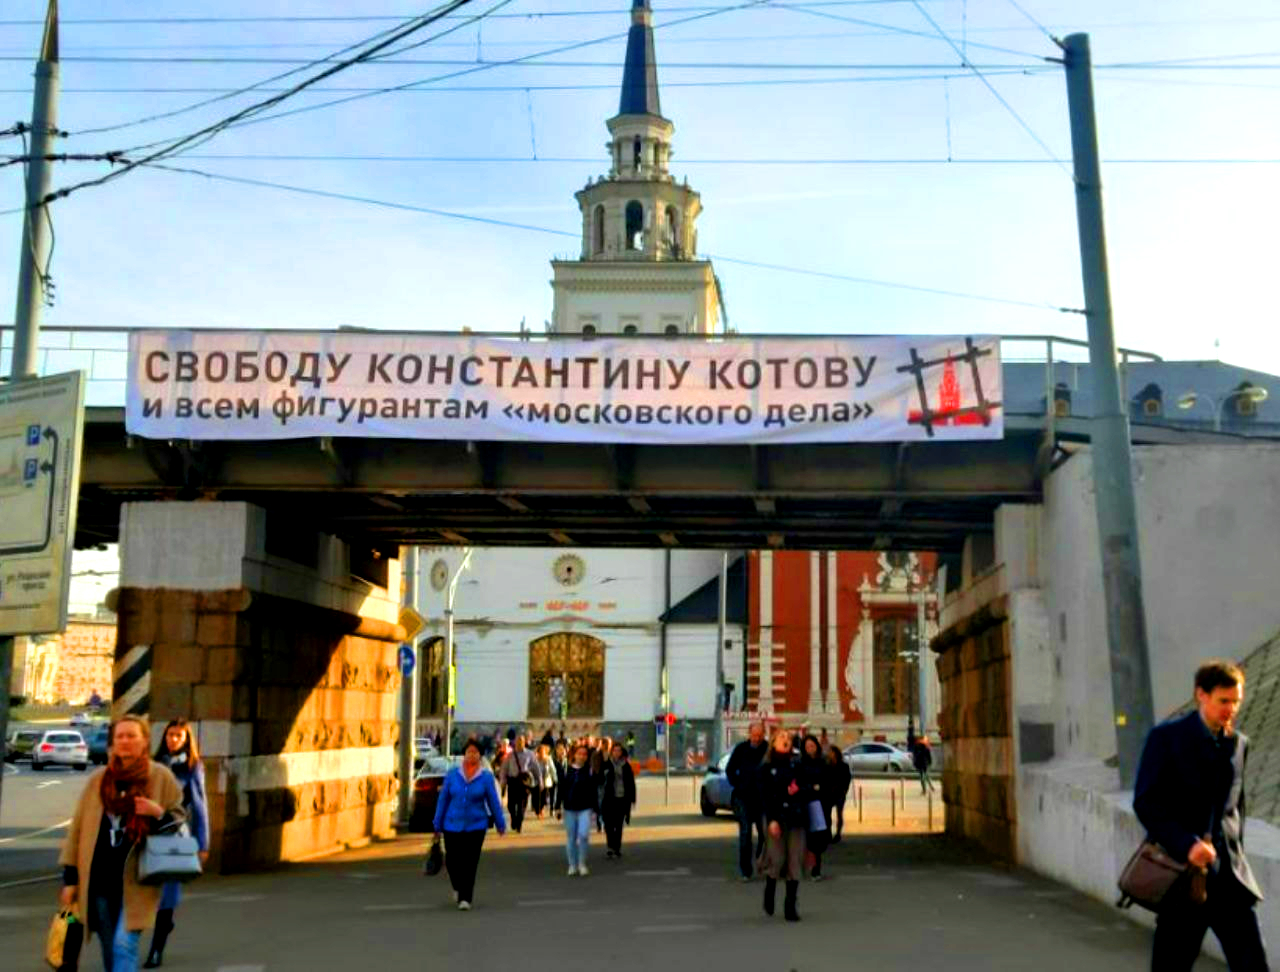 В Москве появился баннер в поддержку фигурантов «московского дела»